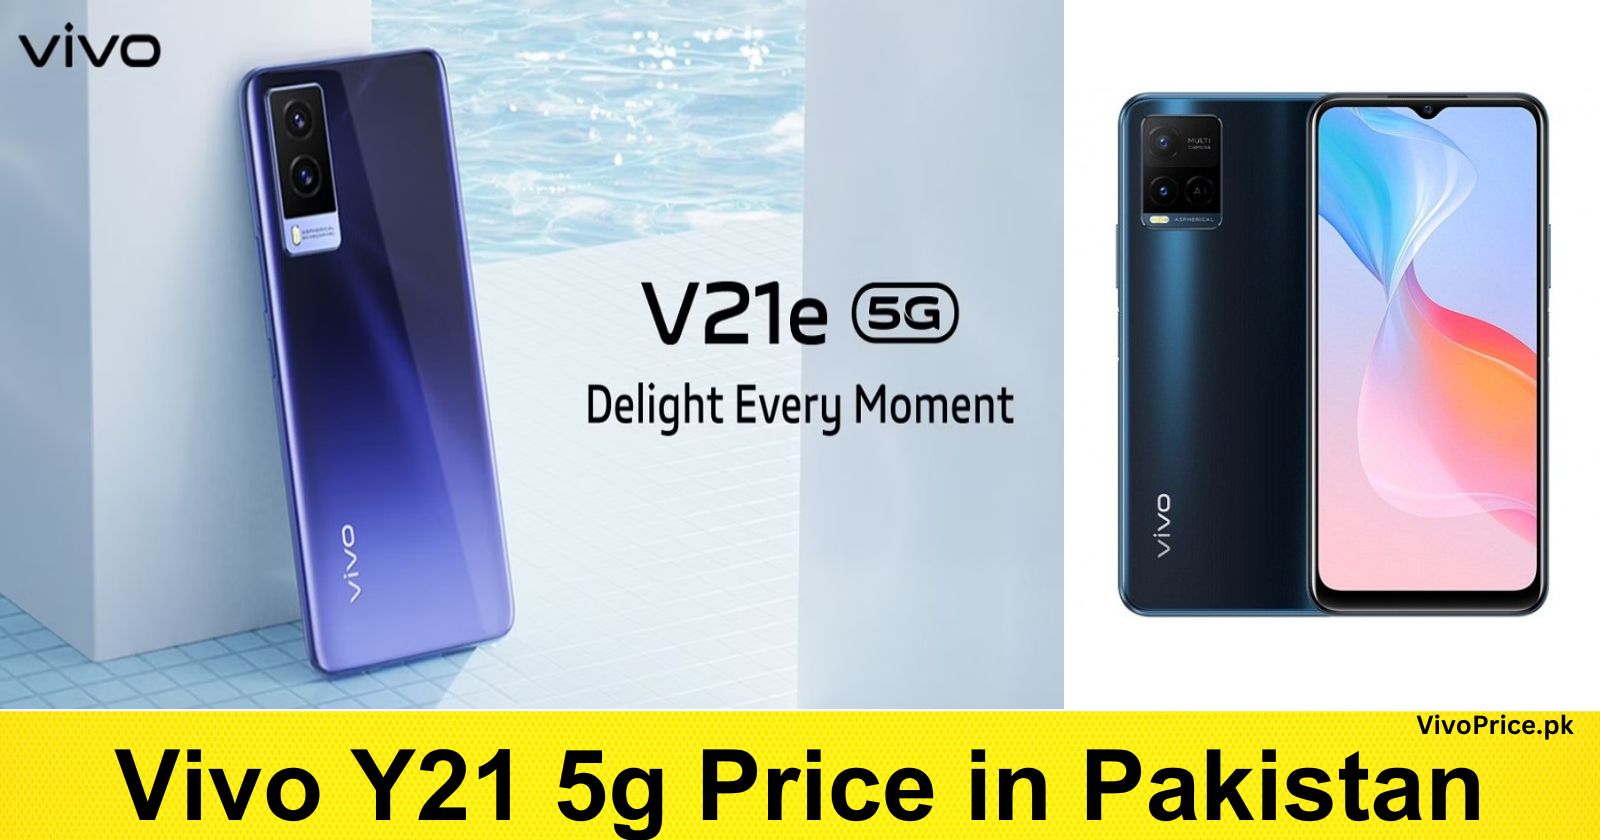 Vivo Y21 5g Price in Pakistan | VivoPrice.pk